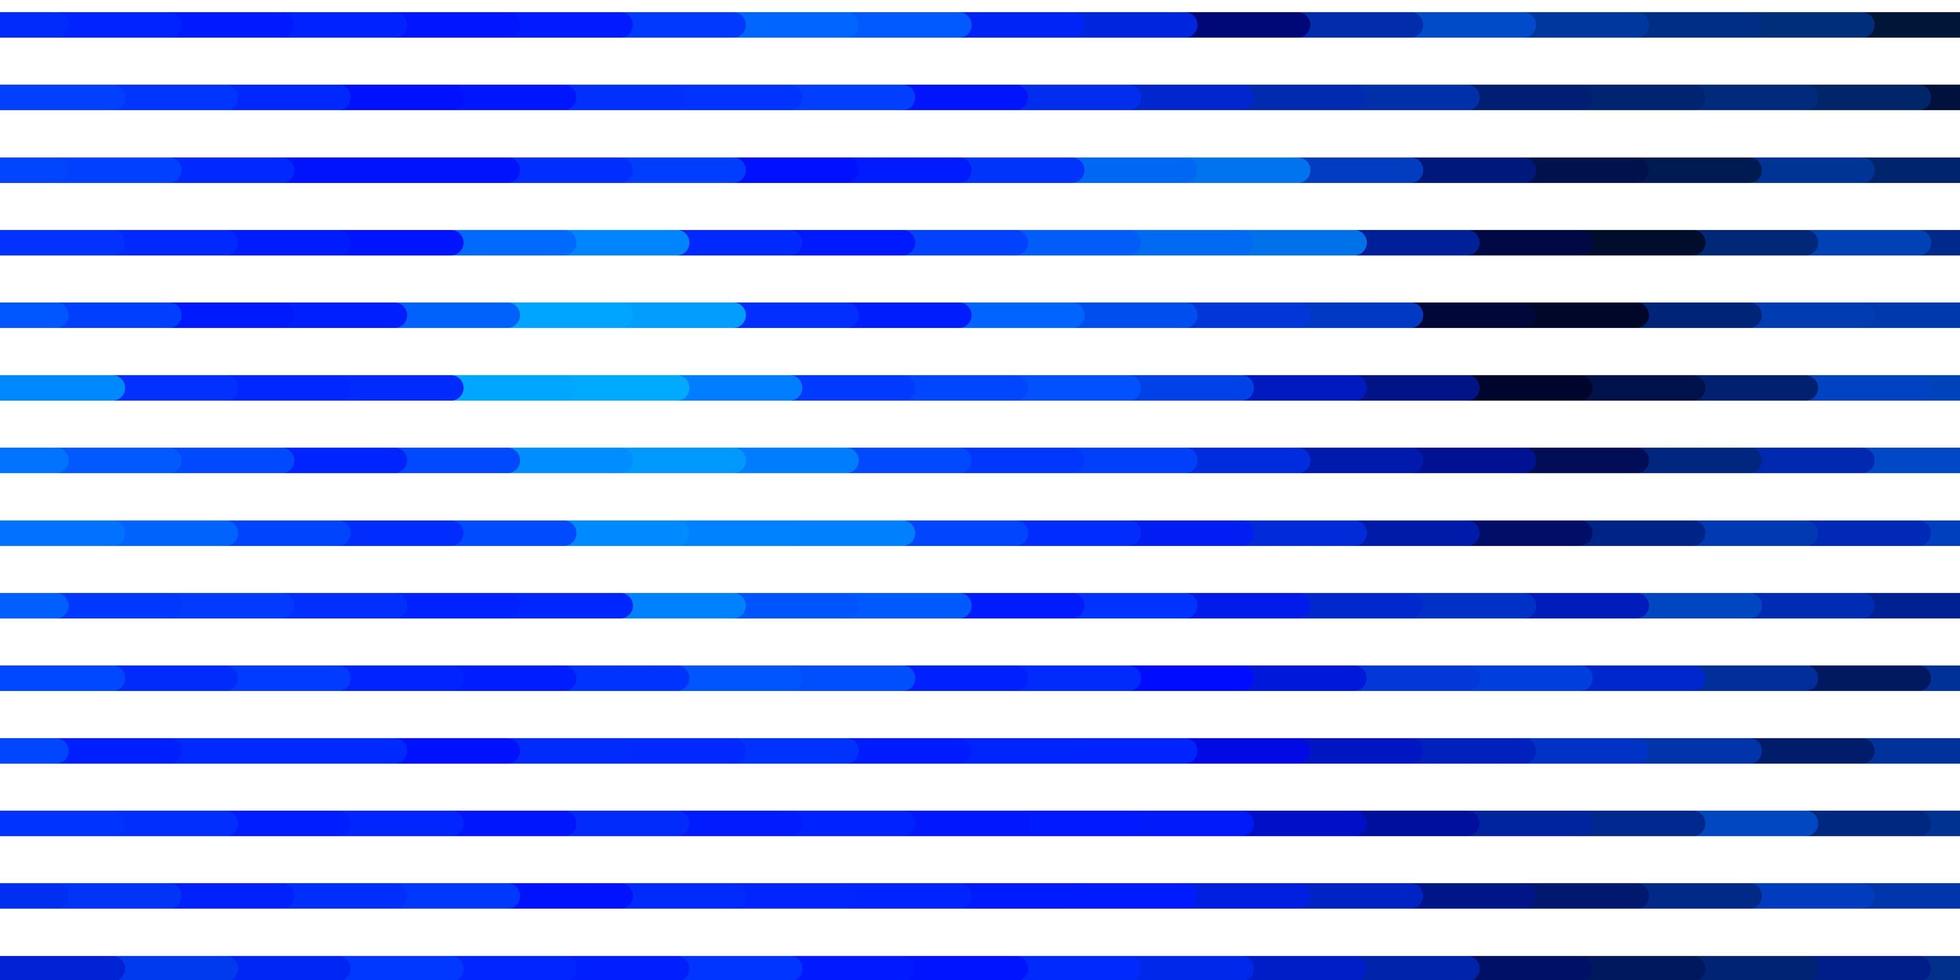 modèle vectoriel bleu clair avec des lignes.